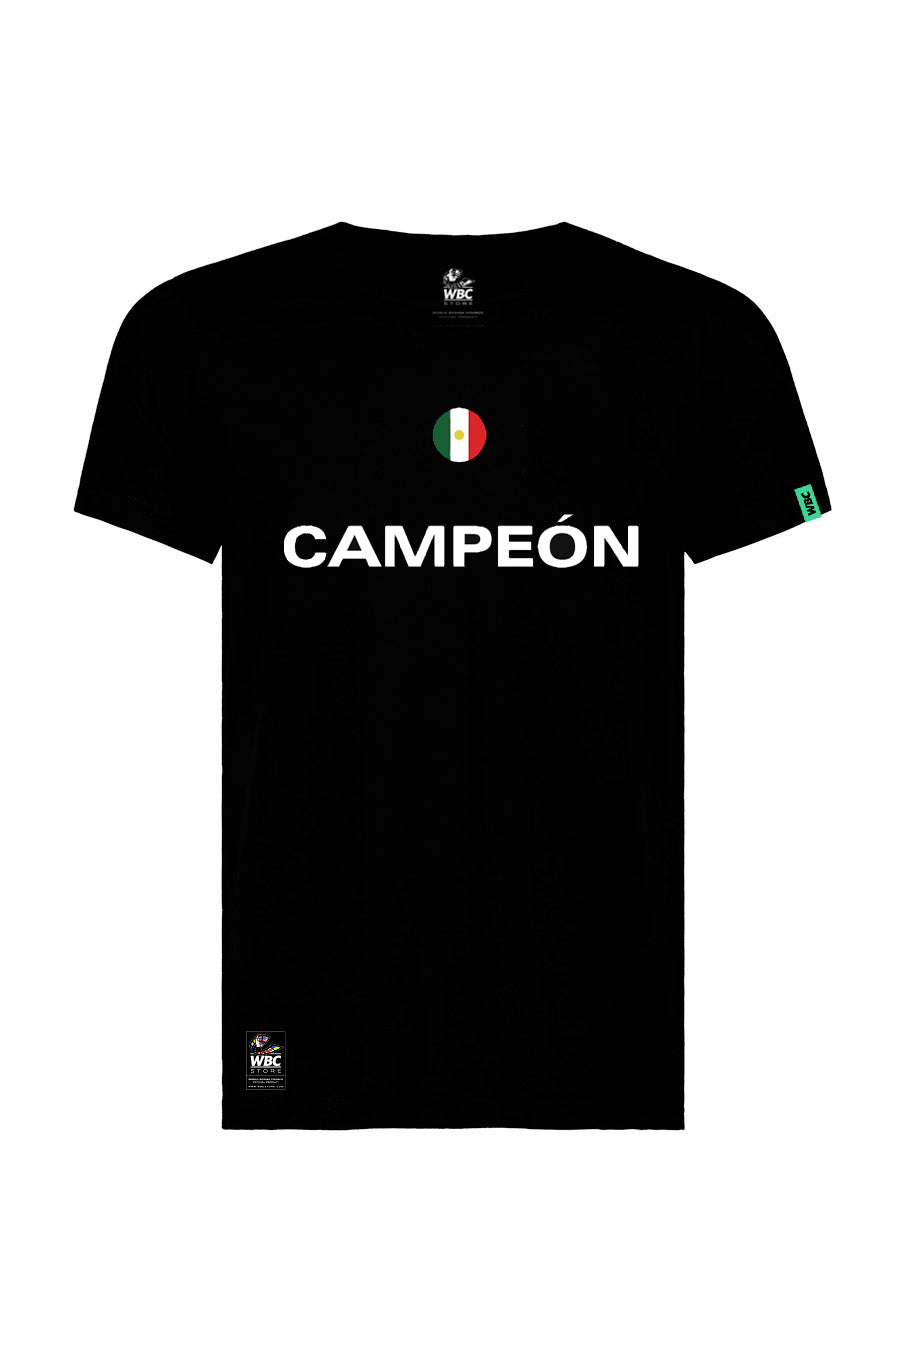 Mexico - Jersey Teams Store